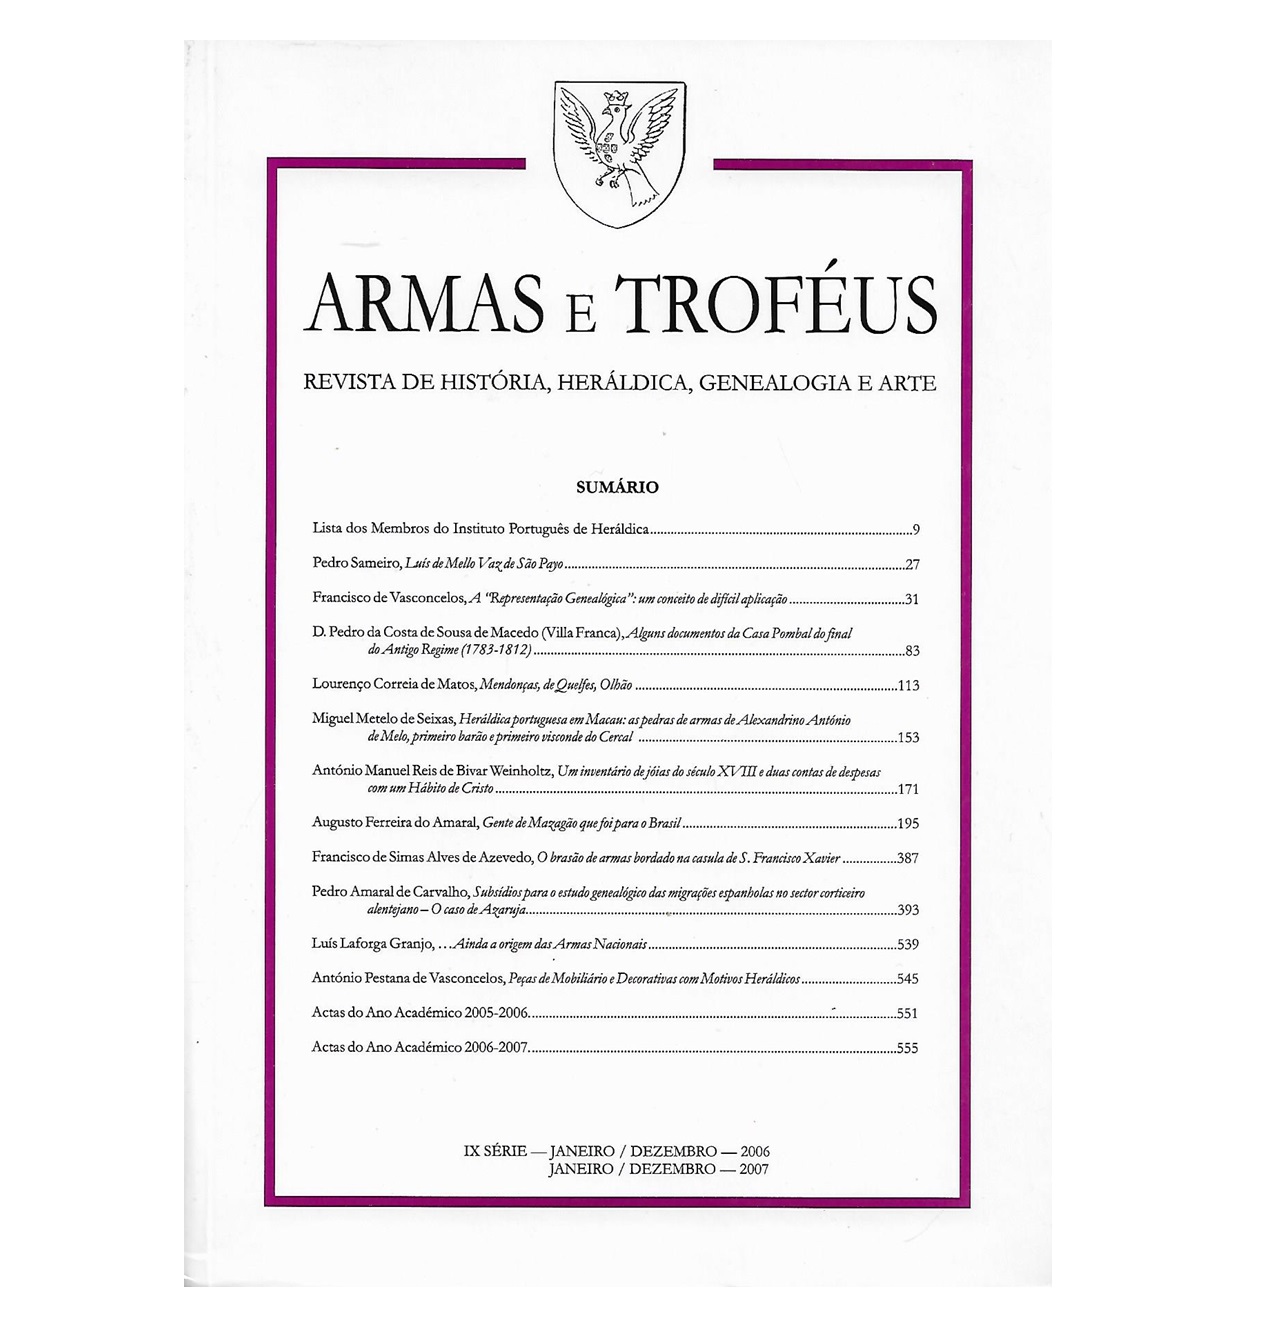 ARMAS E TROFÉUS - 2006-2007